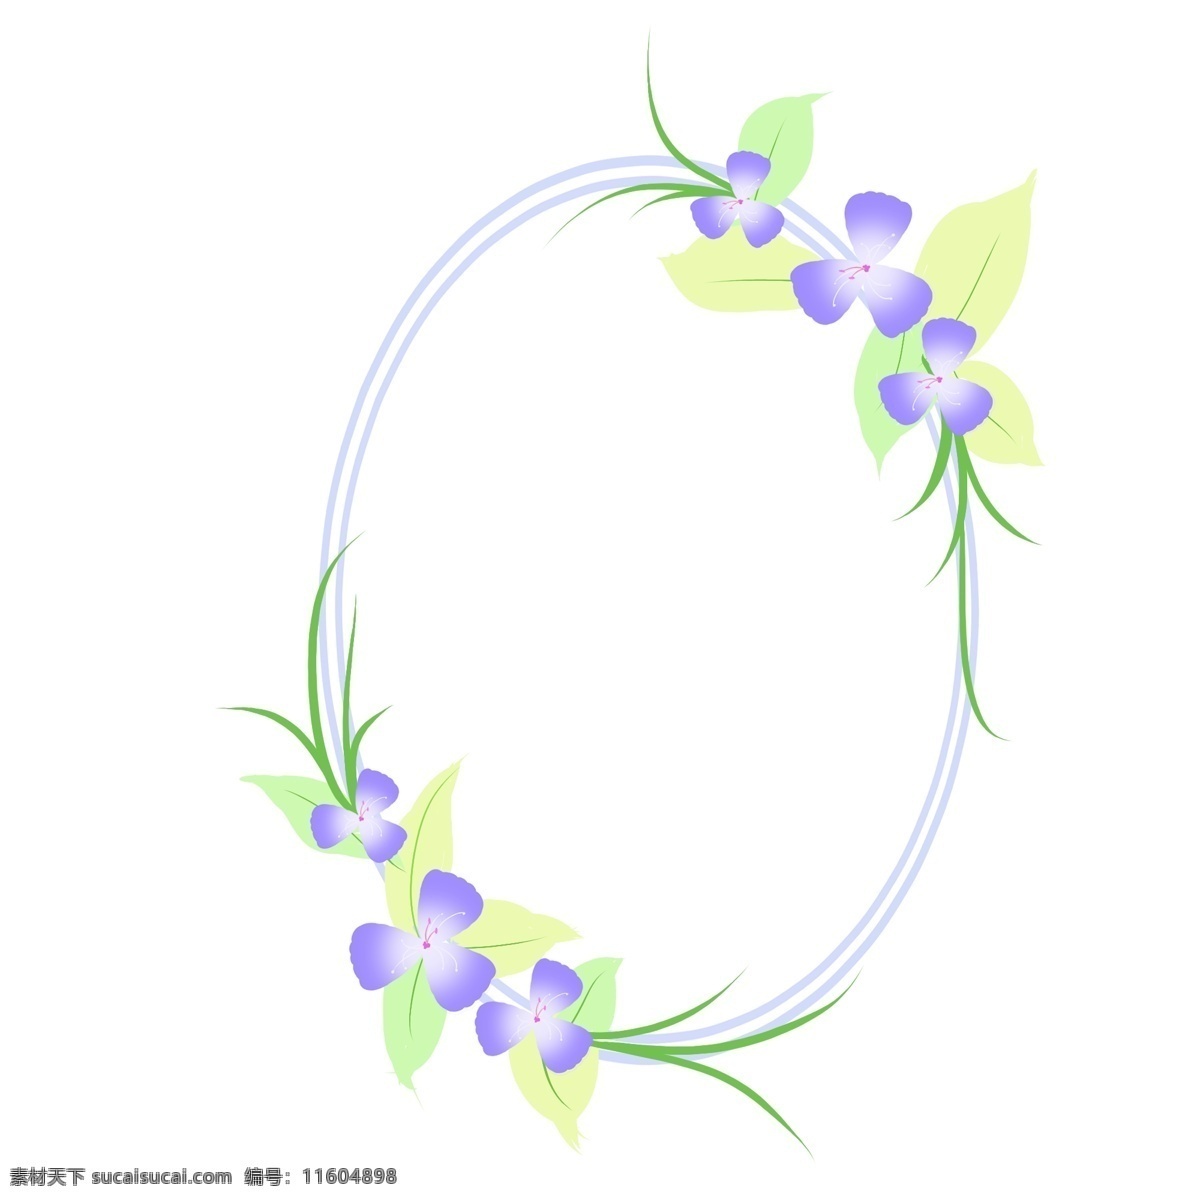 锥形 卡通 边框 插画 紫色花朵边框 绿叶边框 锥形边框 卡通圆形边框 植物边框 边框装饰插画 卡通植物